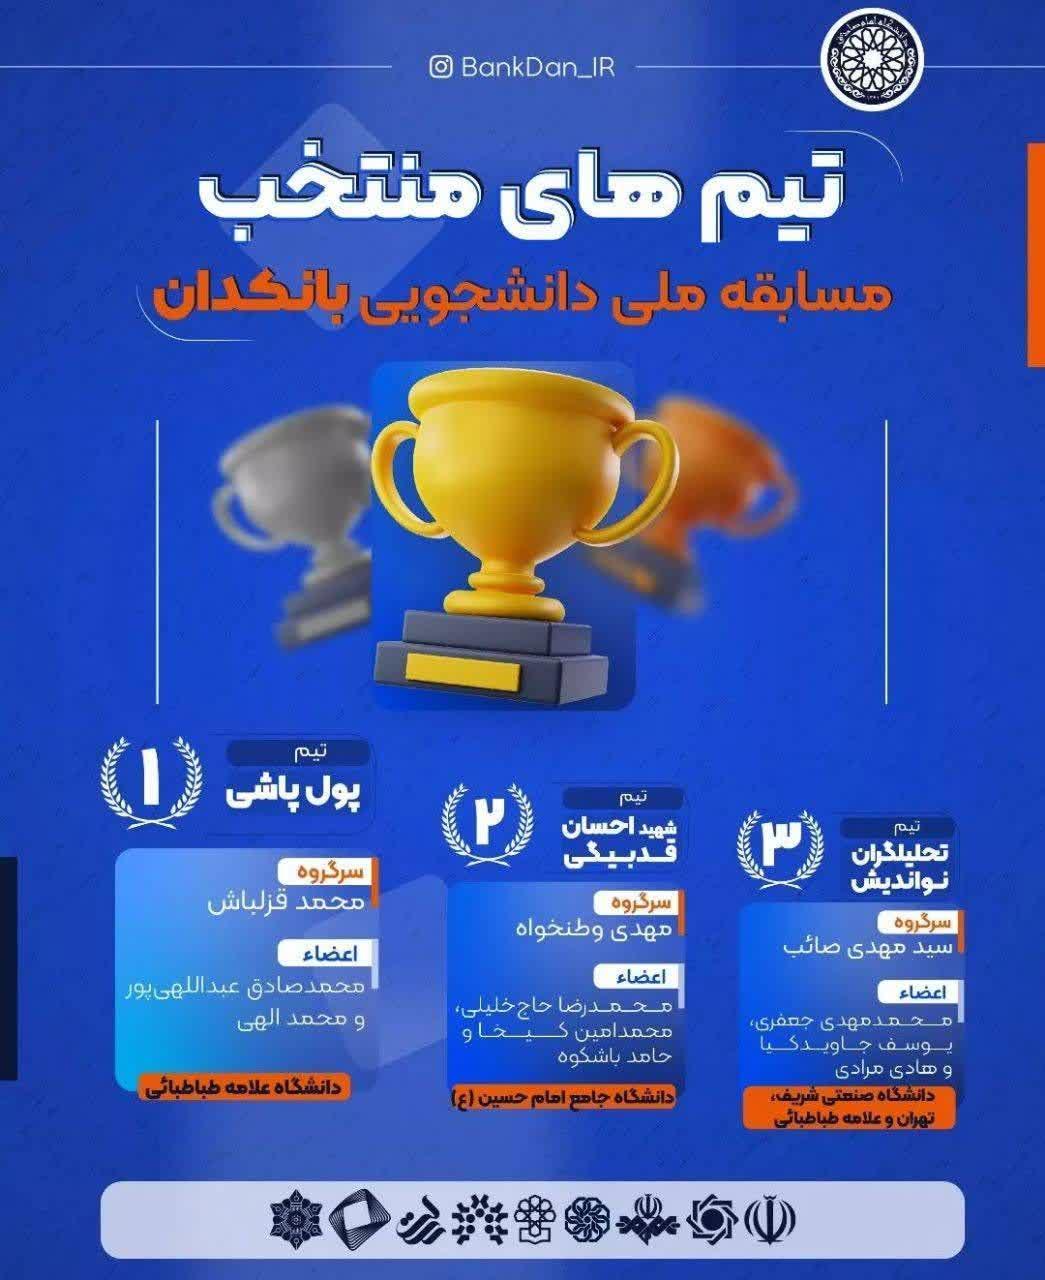 نایب قهرمانی تیم دانشگاه جامع امام حسین(ع) در مسابقه ملی دانشجویی بانکدان